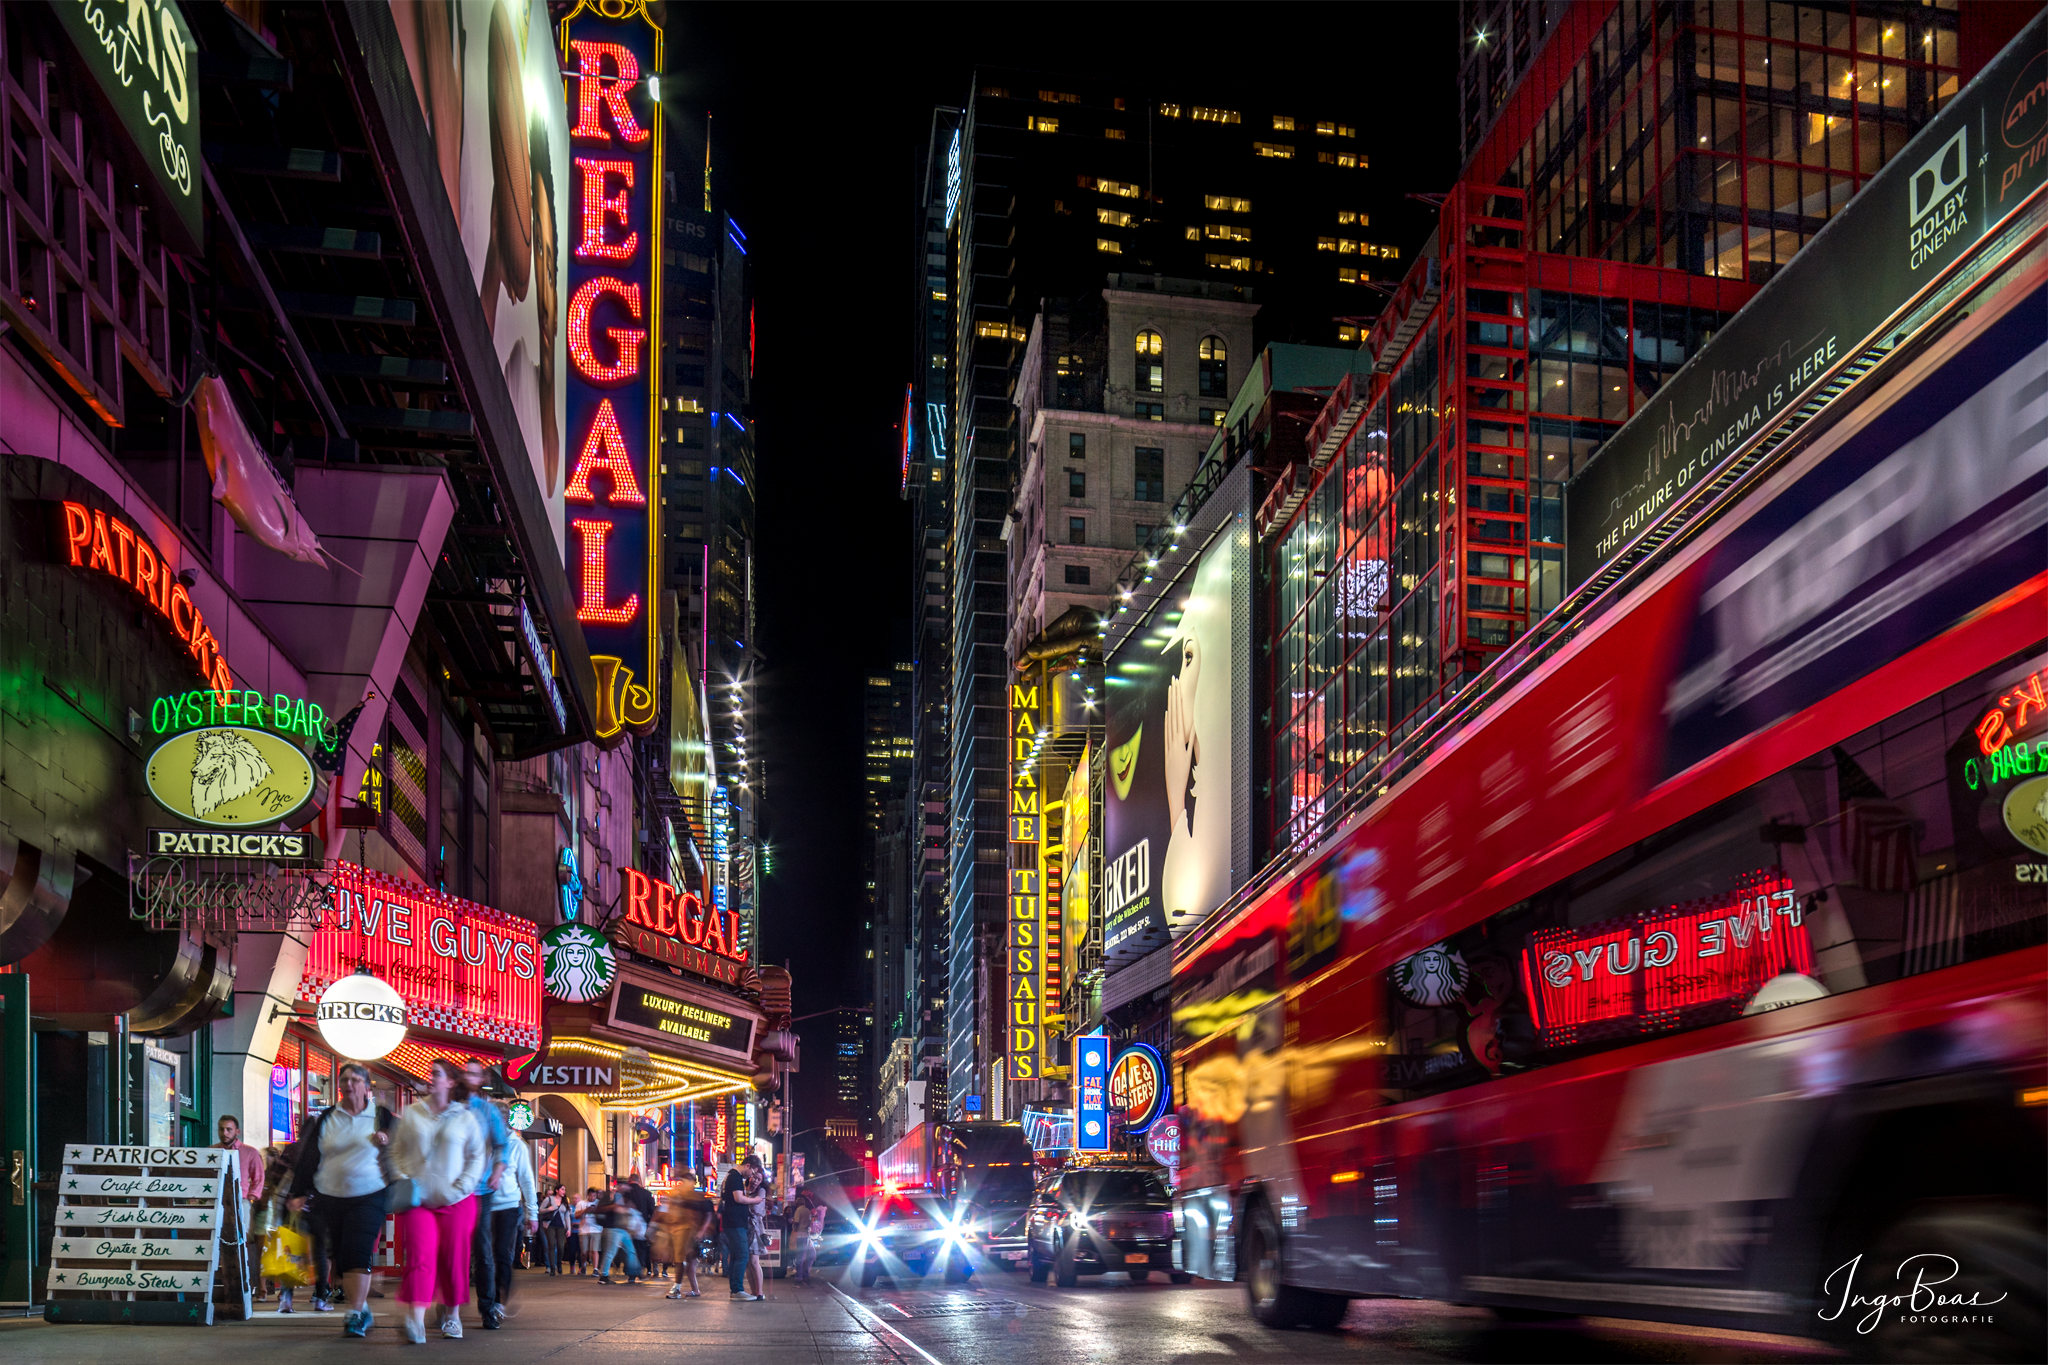 Die Lichter am Time Square gehören zu jeder Fotoreise dazu